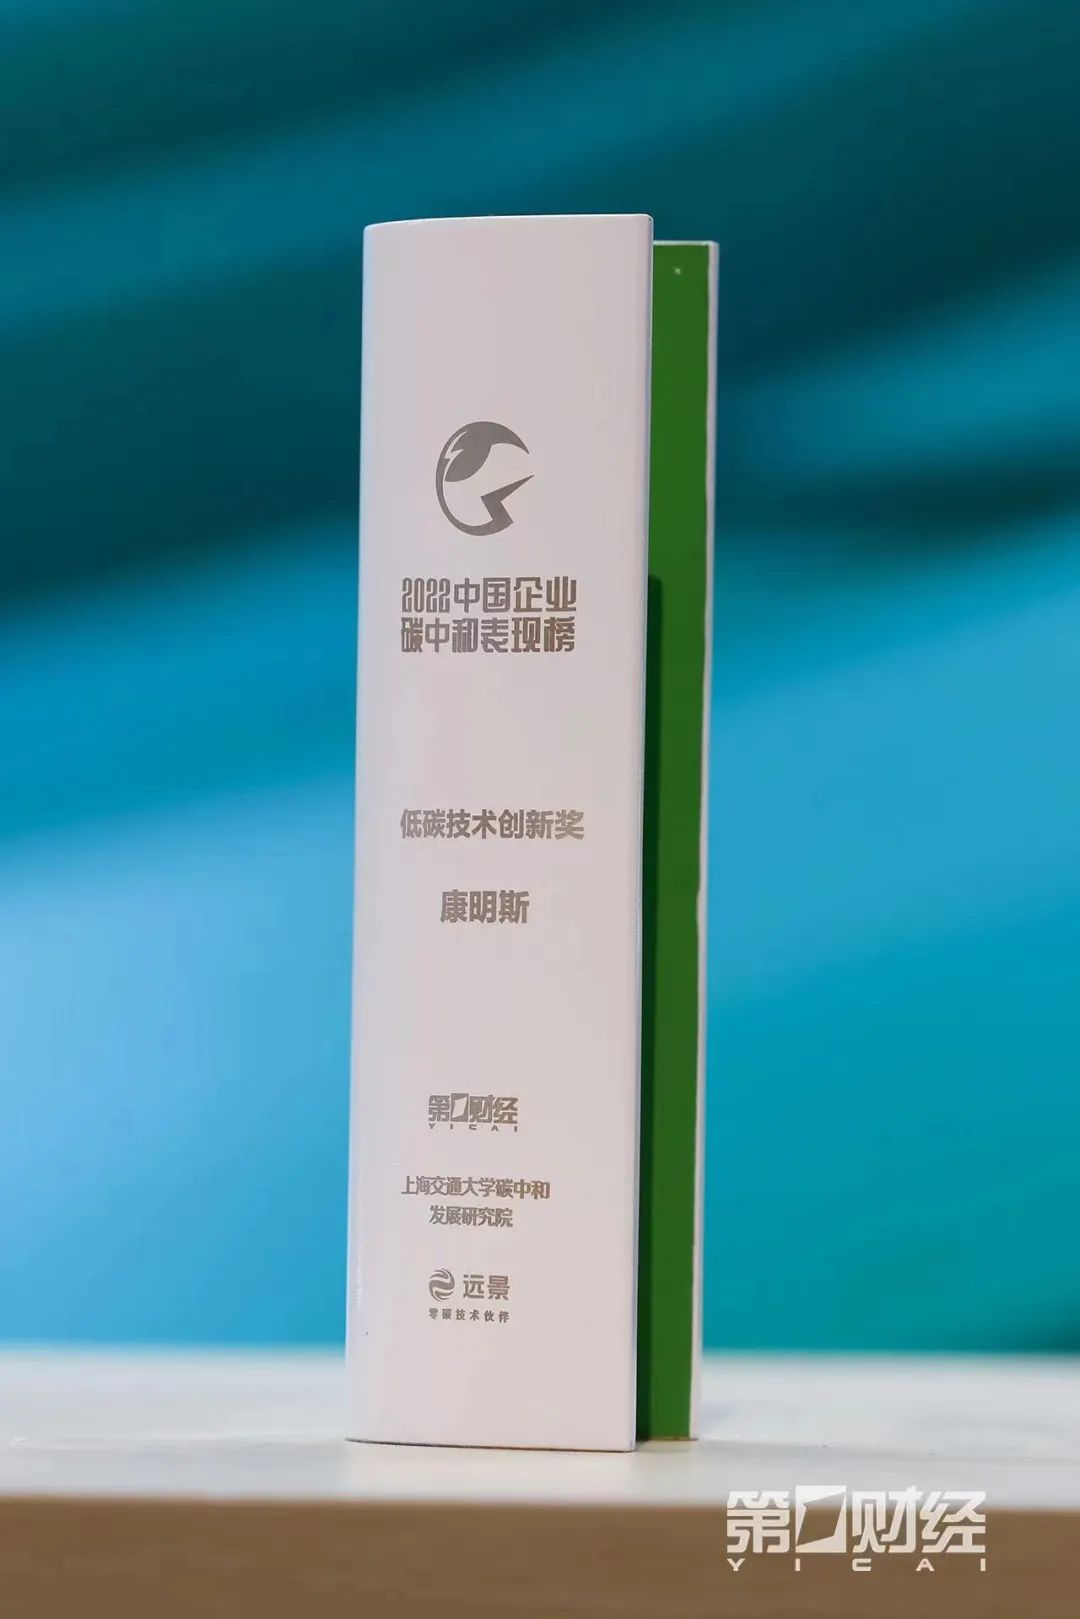 又拿奖了！康明斯喜获首届中国企业碳中和表现榜“低碳技术创新奖”